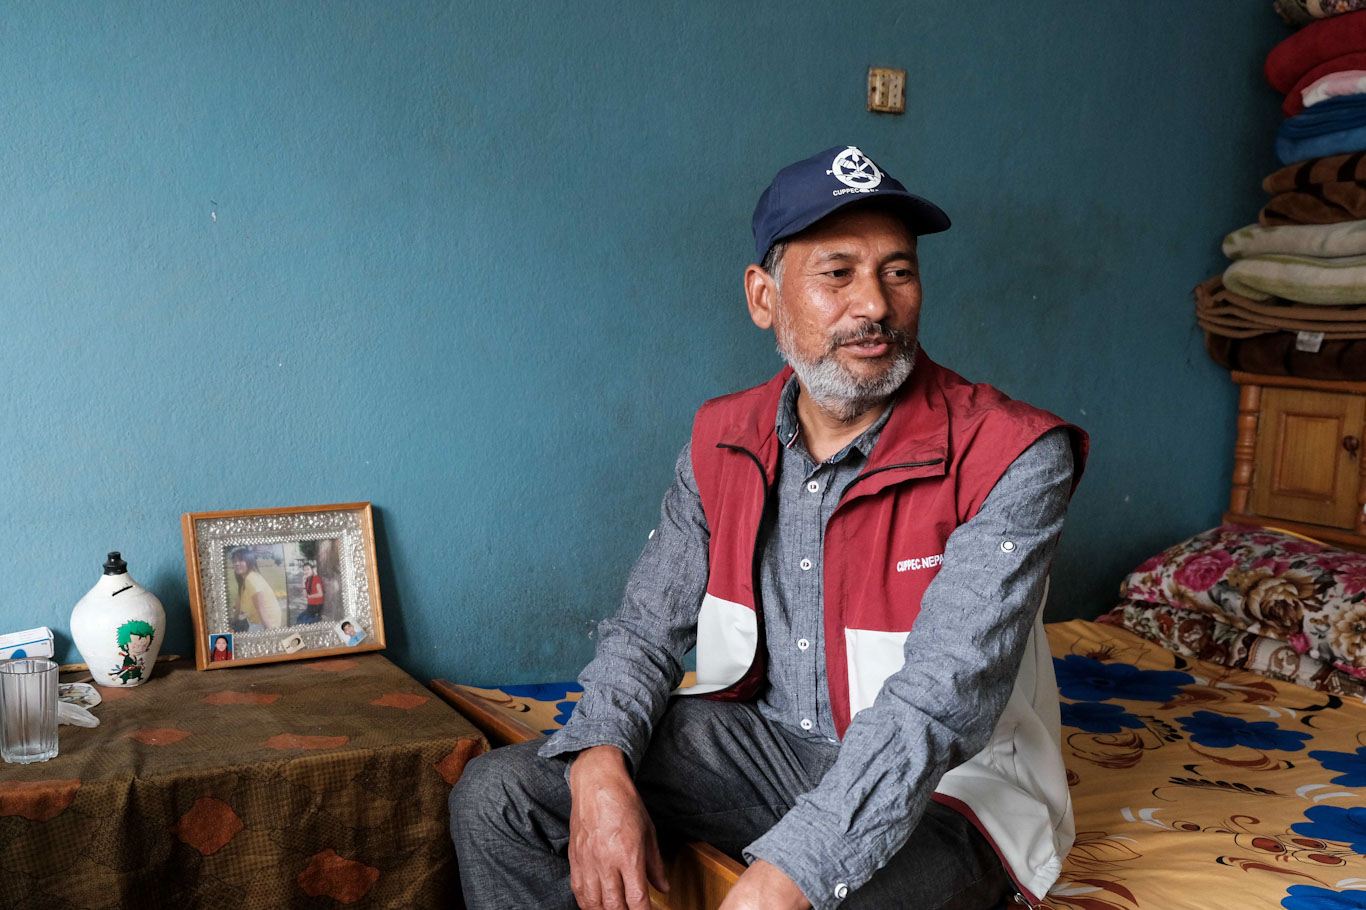 Nepaliin Qatarista palannut siirtoytyöntekijä Sushant Raya istuu turkoosiseinäisessä huoneessa